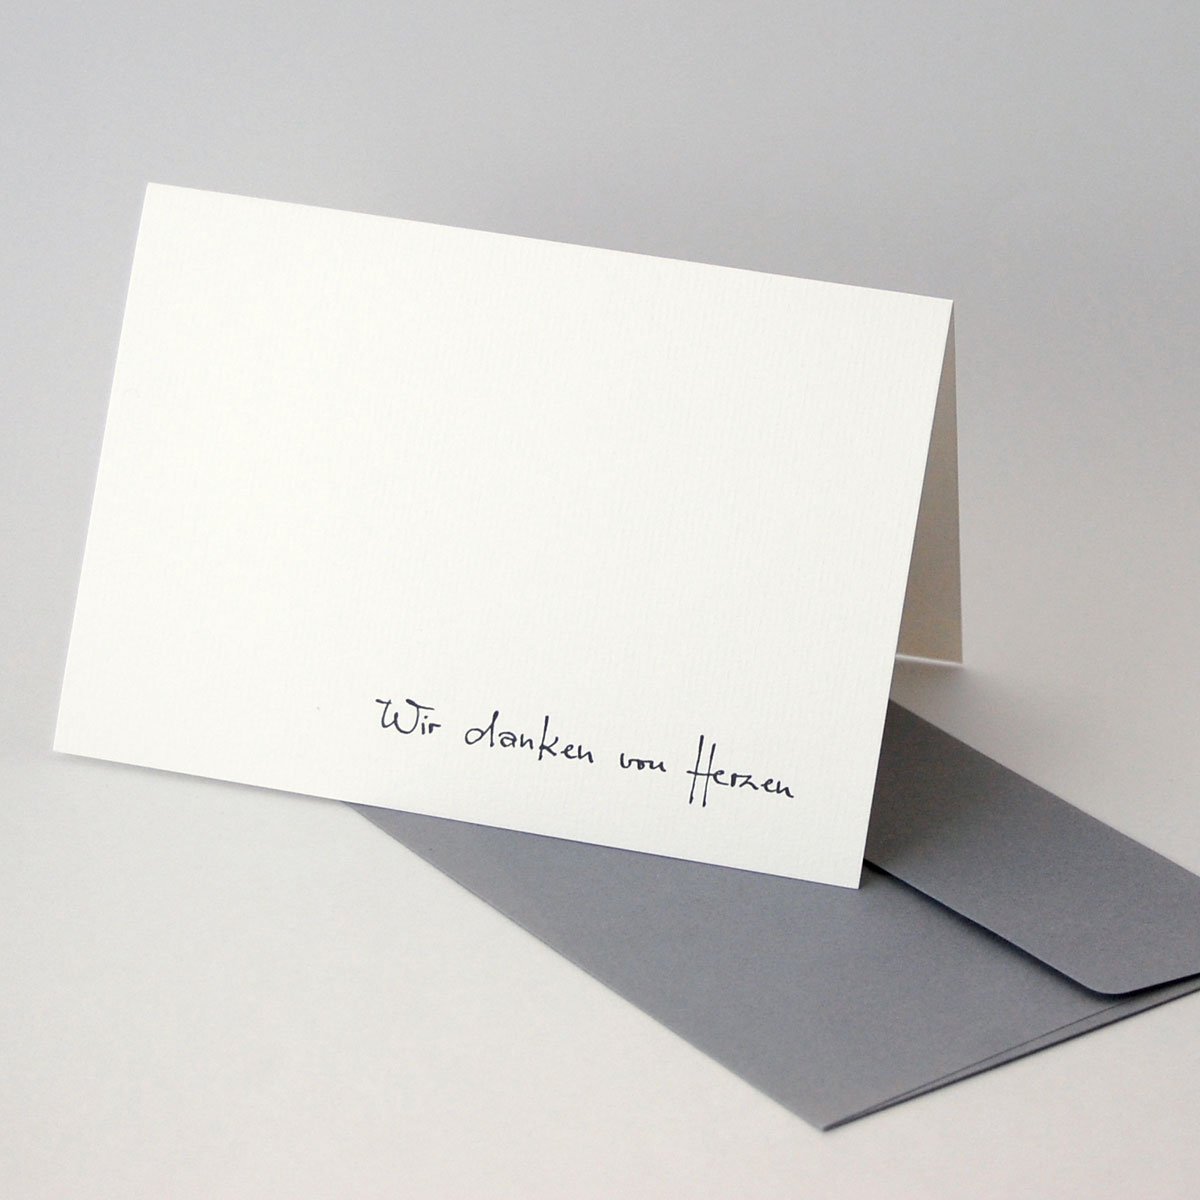 Wir danken von Herzen, Karten für die Danksagung nach dem Trauerfall, mit eleganter Handschrift